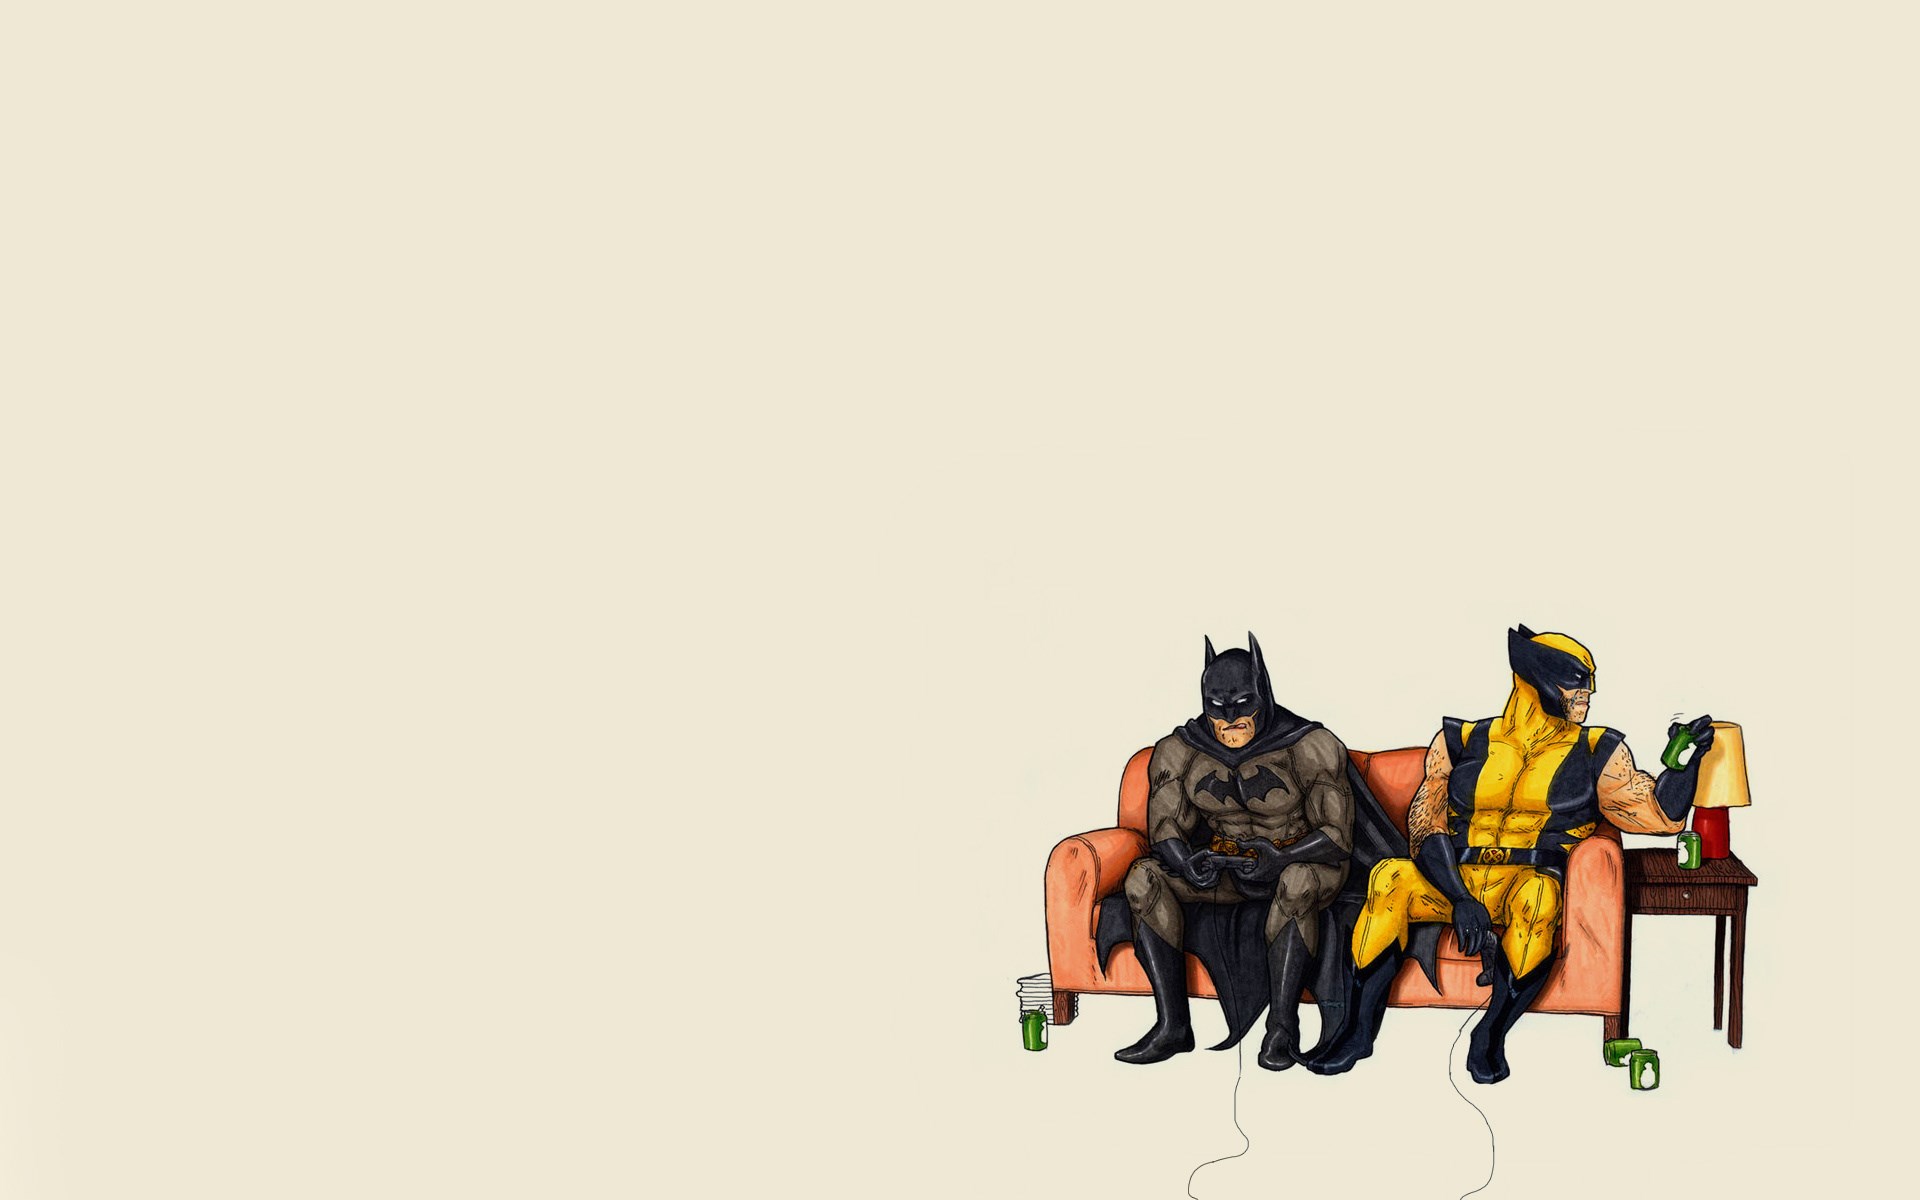 slim-cat957: Batman wallpaper